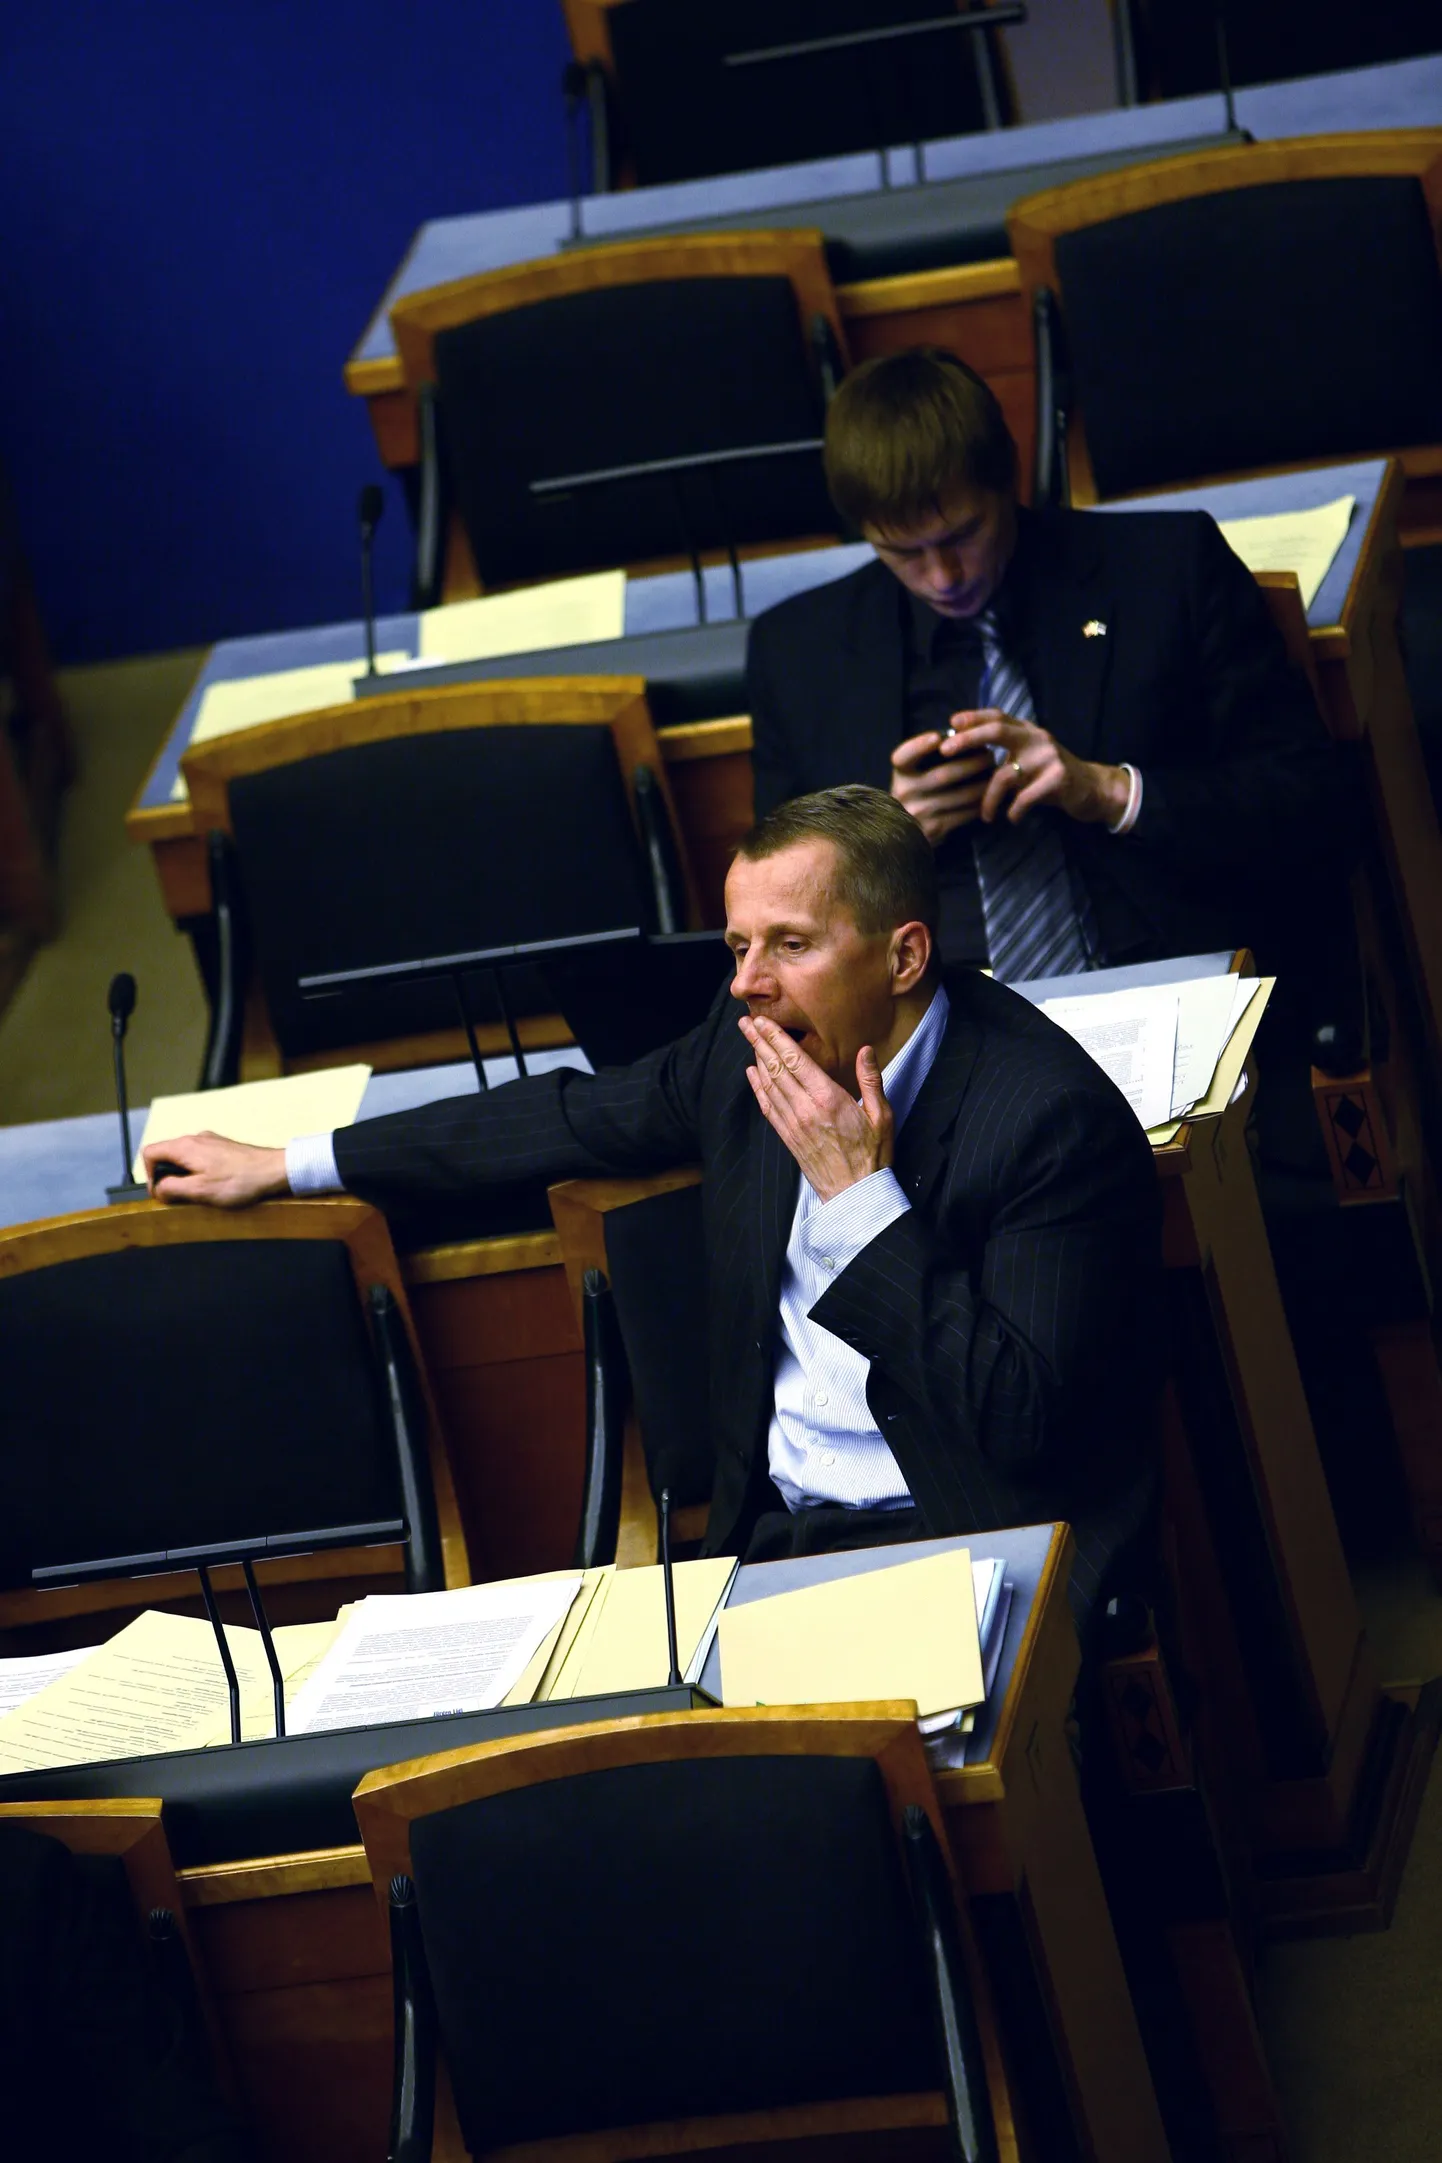 Юрген Лиги на затянувшемся заседании парламента 10 декабря 2008 года, на котором принимали госбюджет.